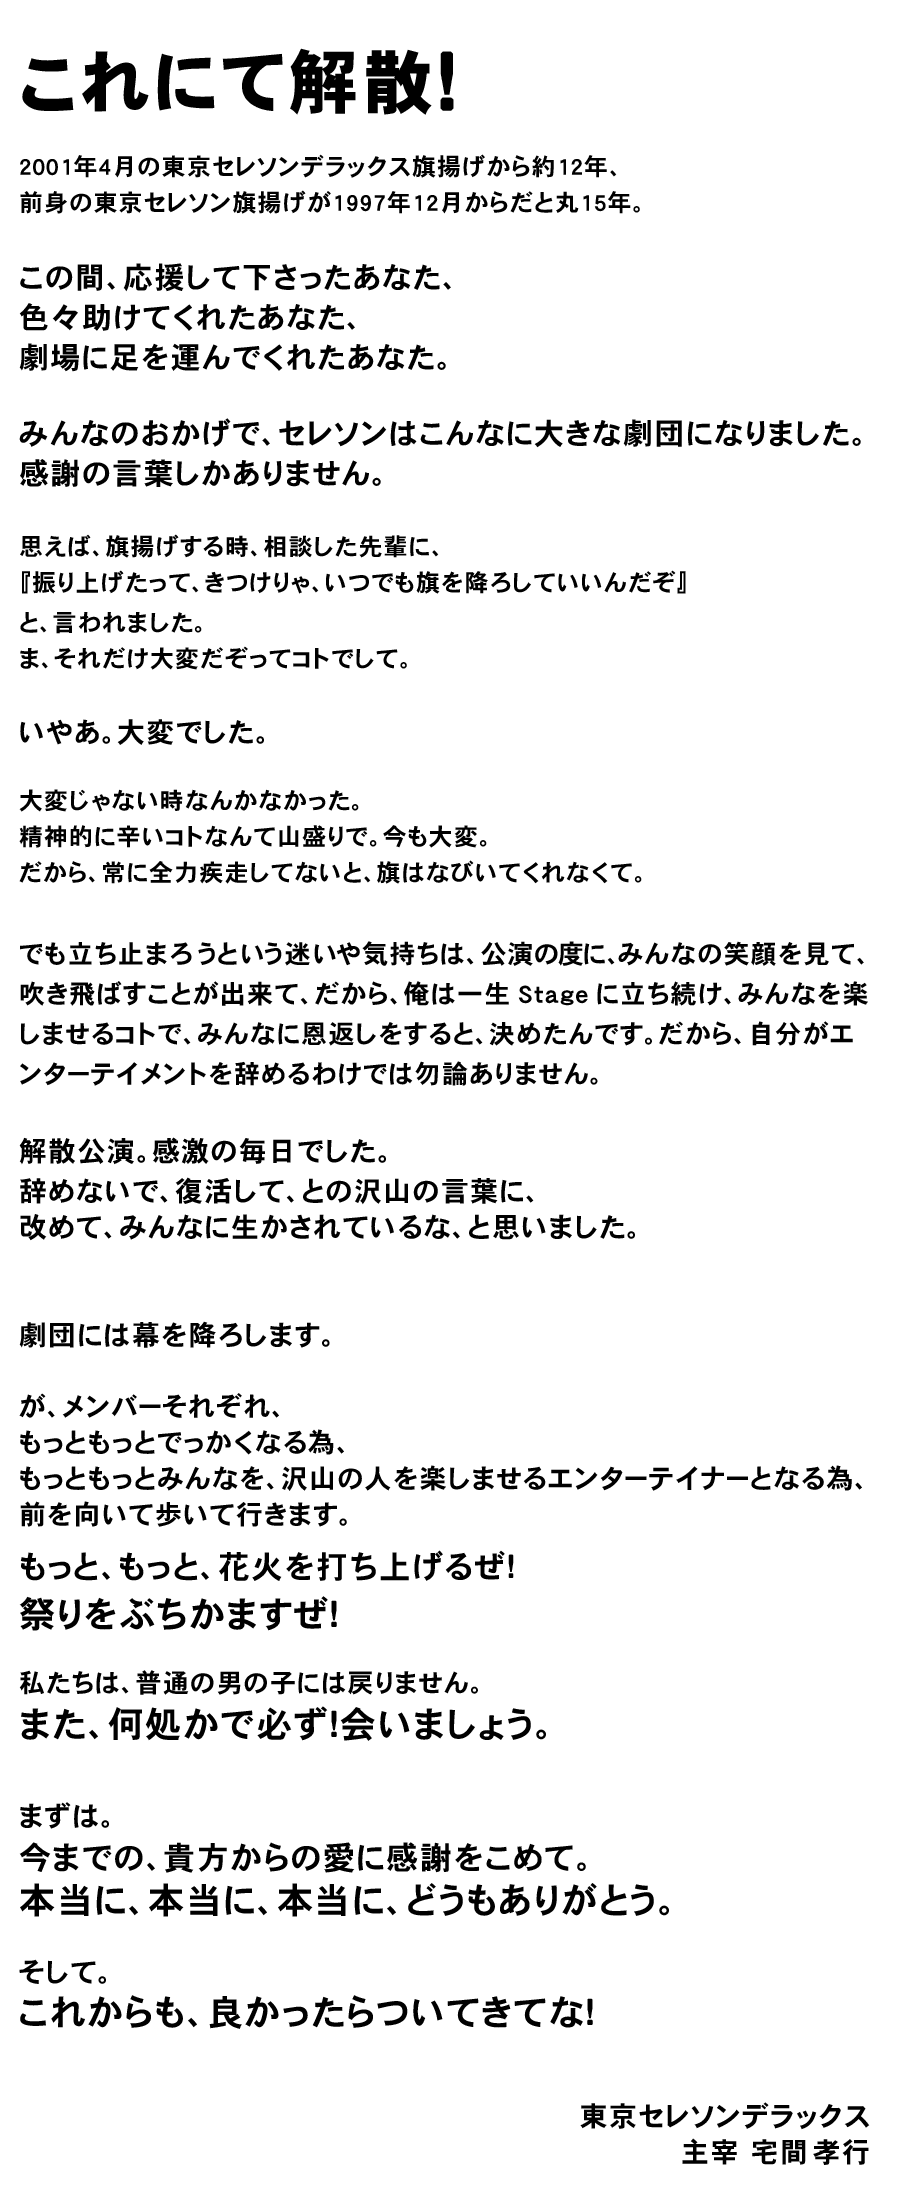 2012年12月31日、東京セレソンデラックスこれにて解散！宅間孝行からのコメント